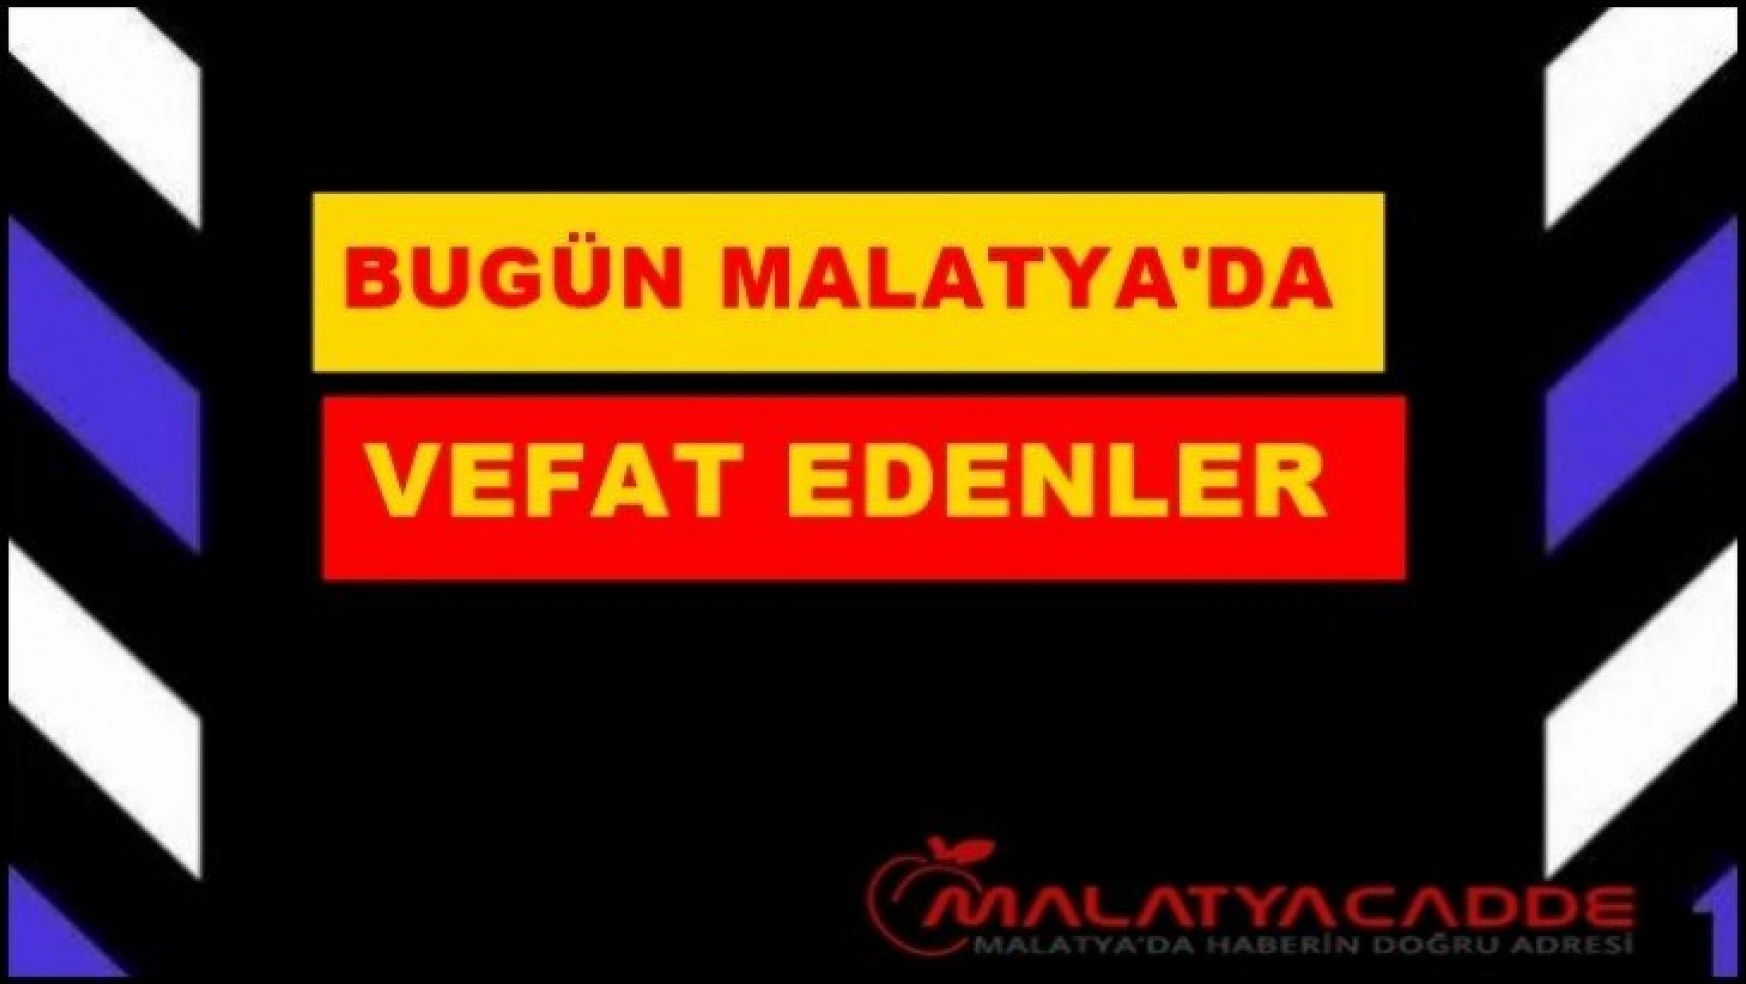 Malatya'da Bugün 9 kişi vefat etti